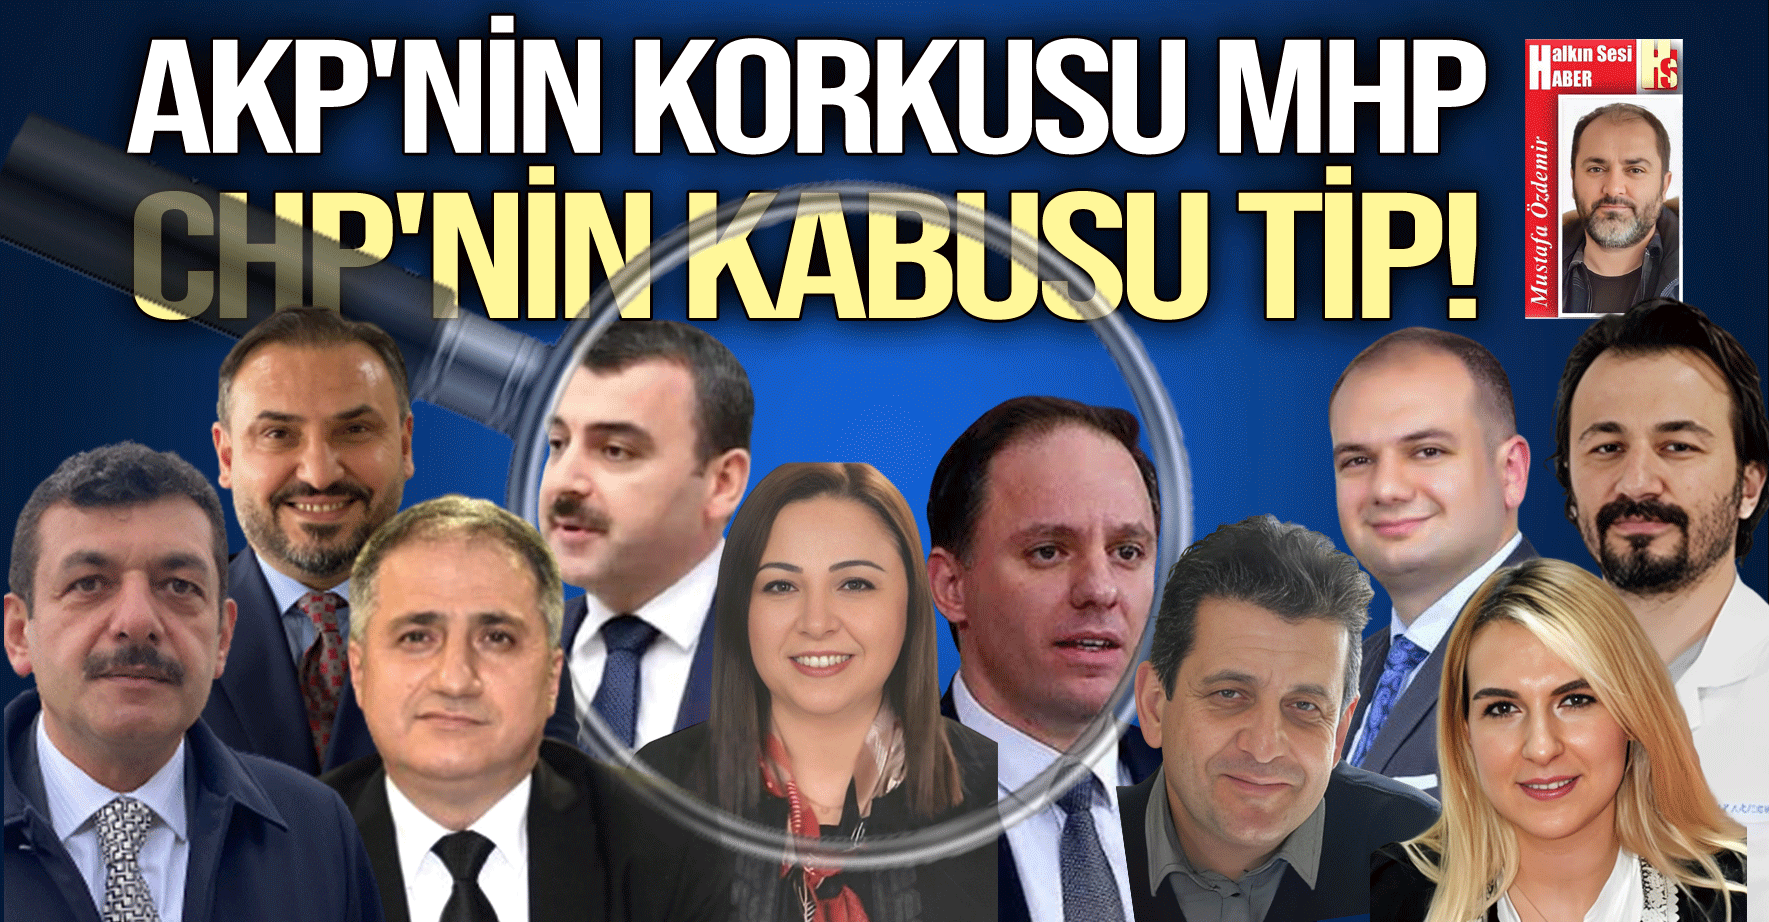 AKP'NİN KORKUSU MHP CHP'NİN KABUSU TİP!